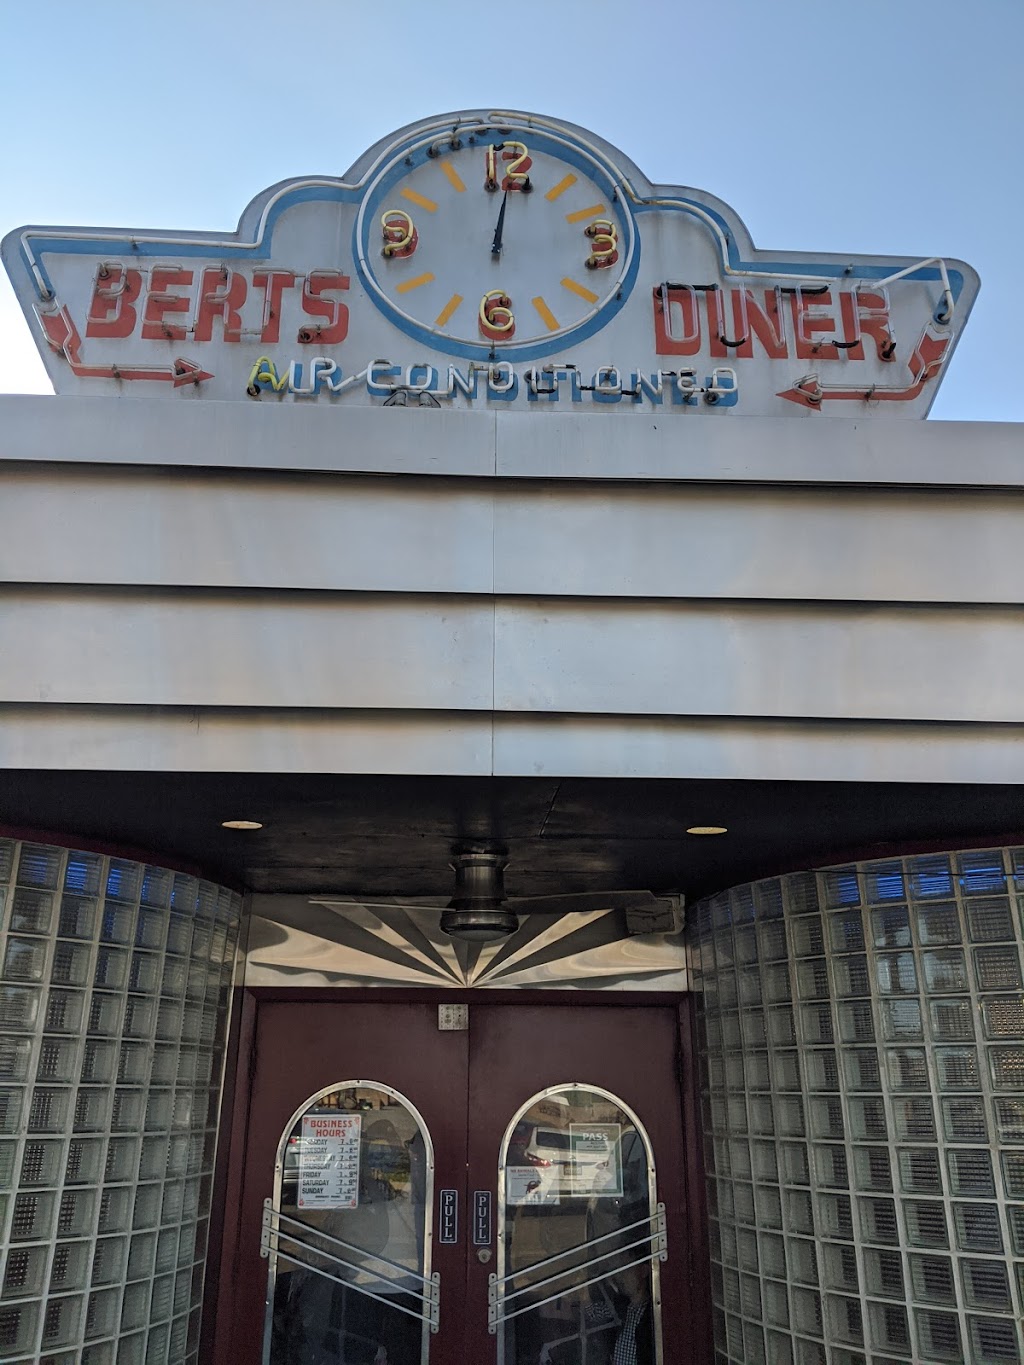 Berts Diner | 8972 Grant Line Rd, Elk Grove, CA 95624, USA | Phone: (916) 686-6622